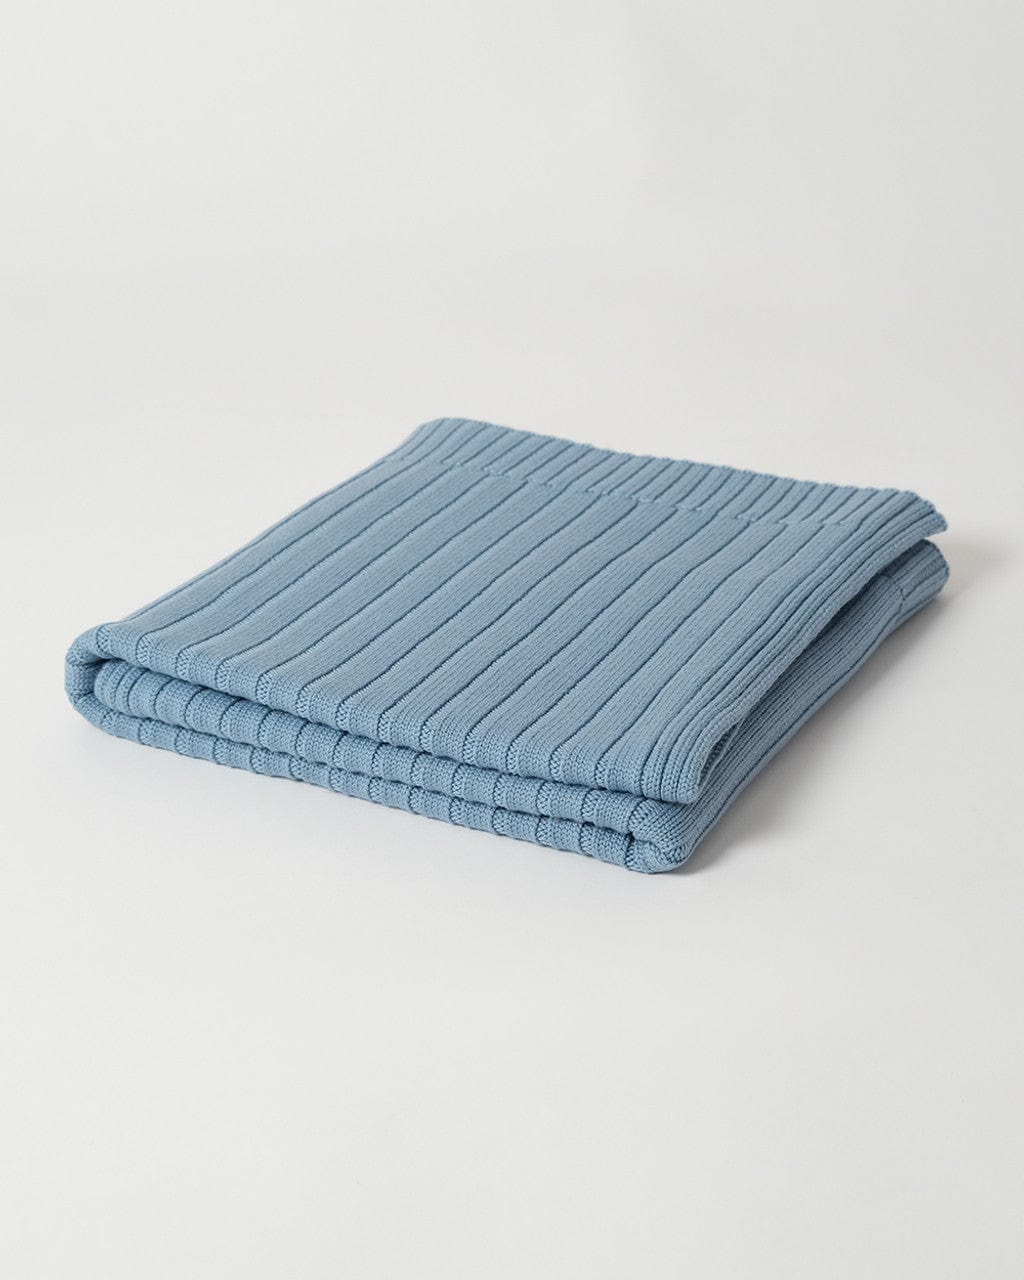 Babu Accessory Blanket Sky Blue Merino Rib Knit Blanket